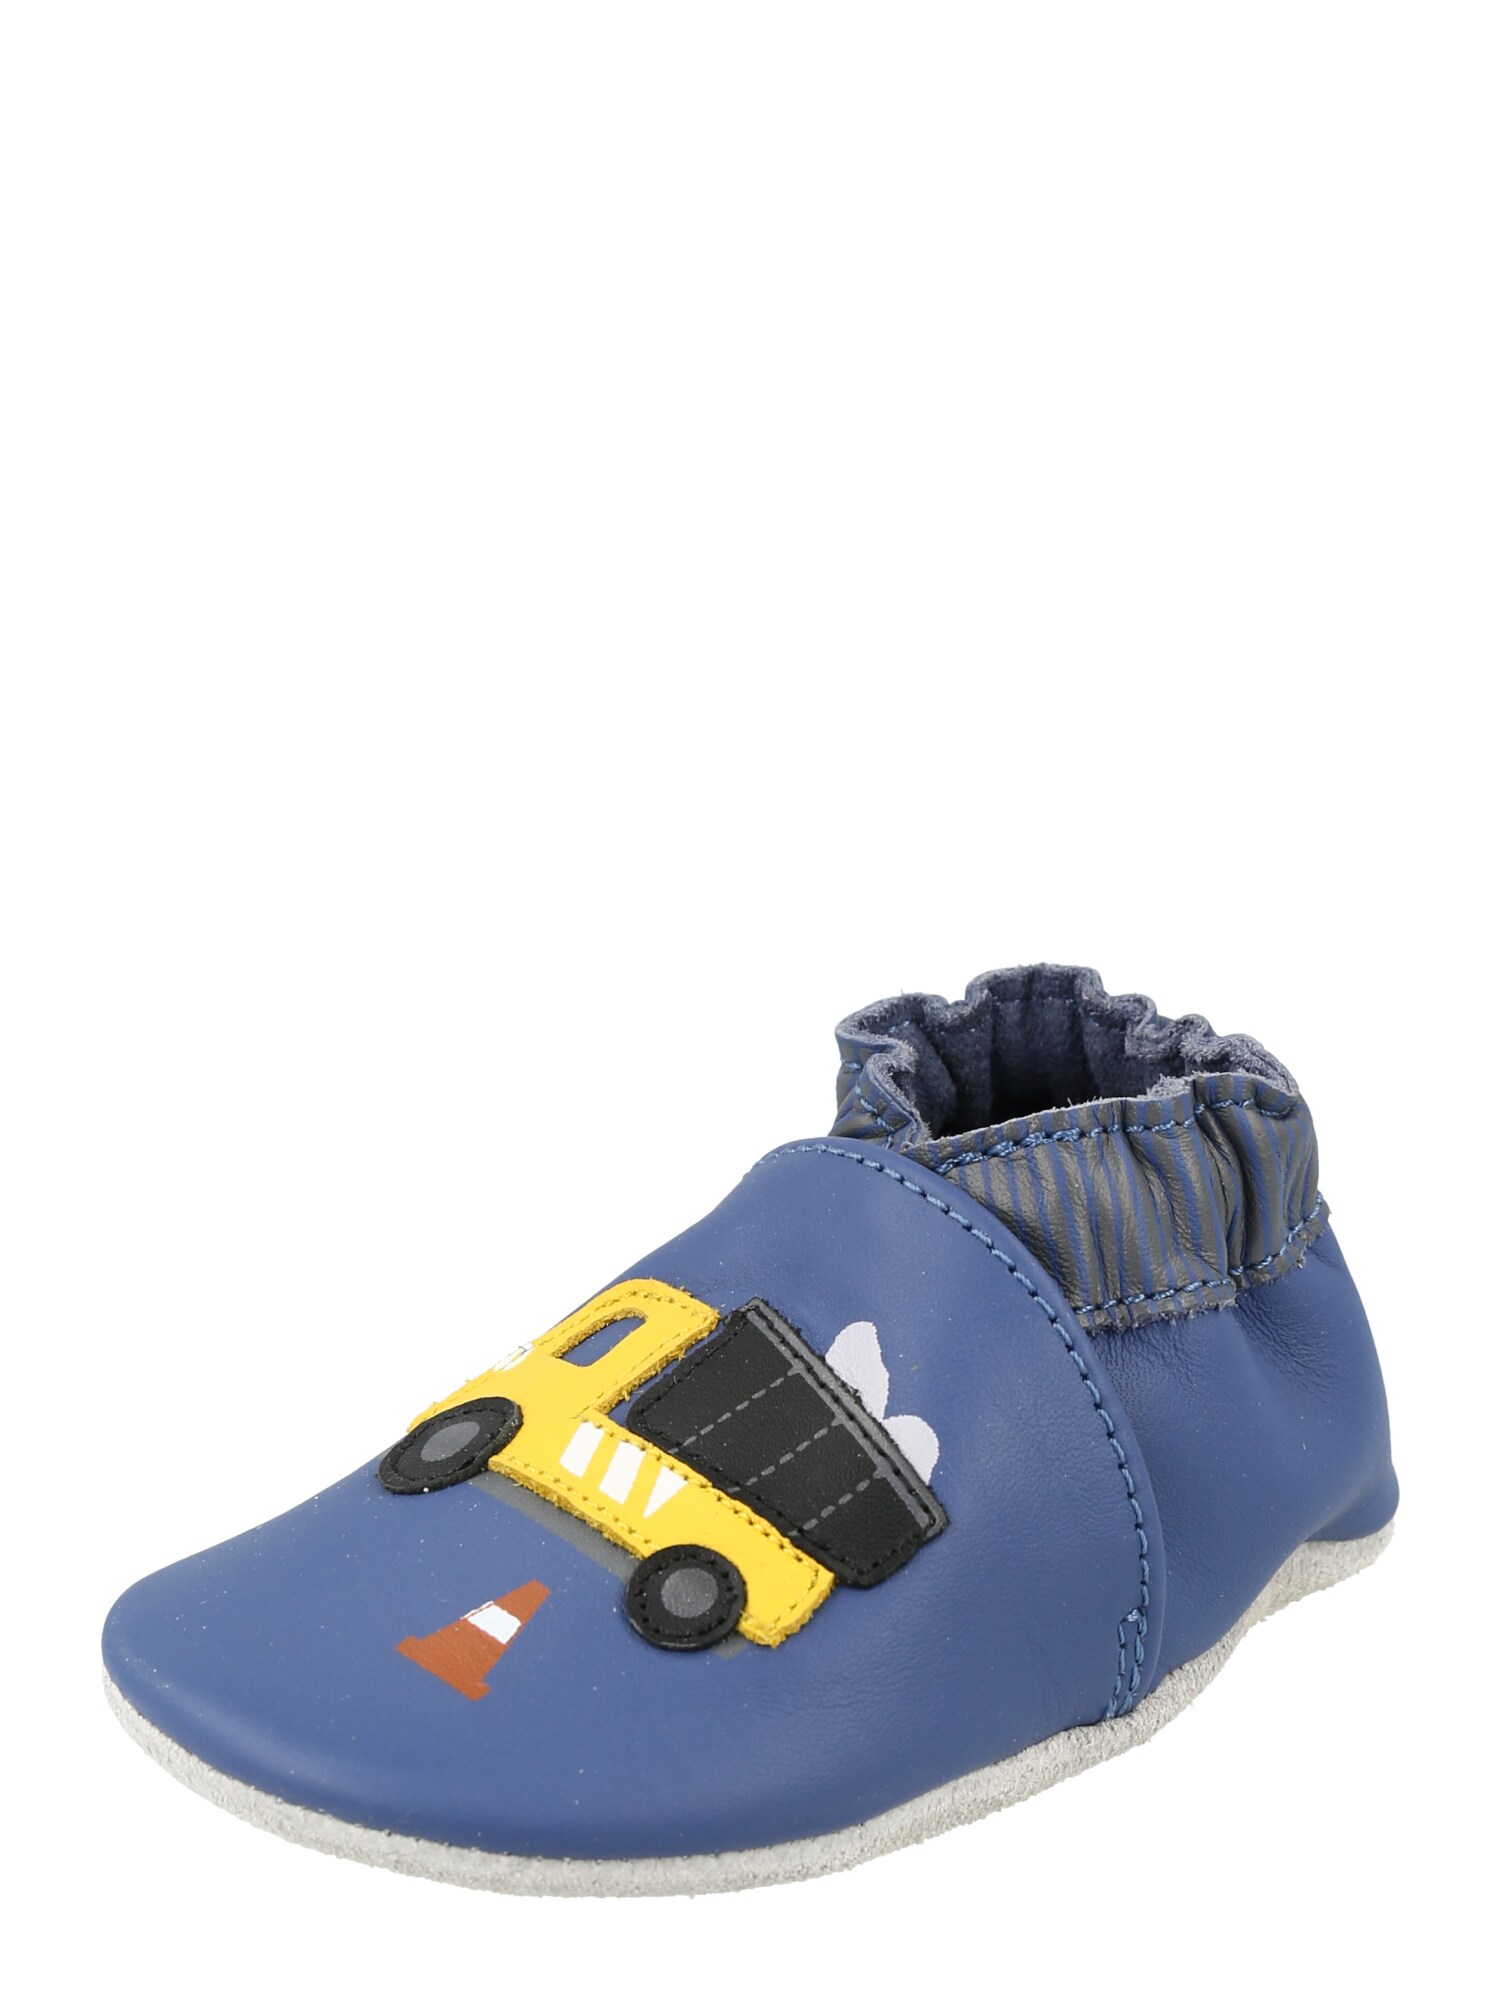 ROBEEZ Pirmieji vaiko vaikščiojimo bateliai mėlyna / mišrios spalvos